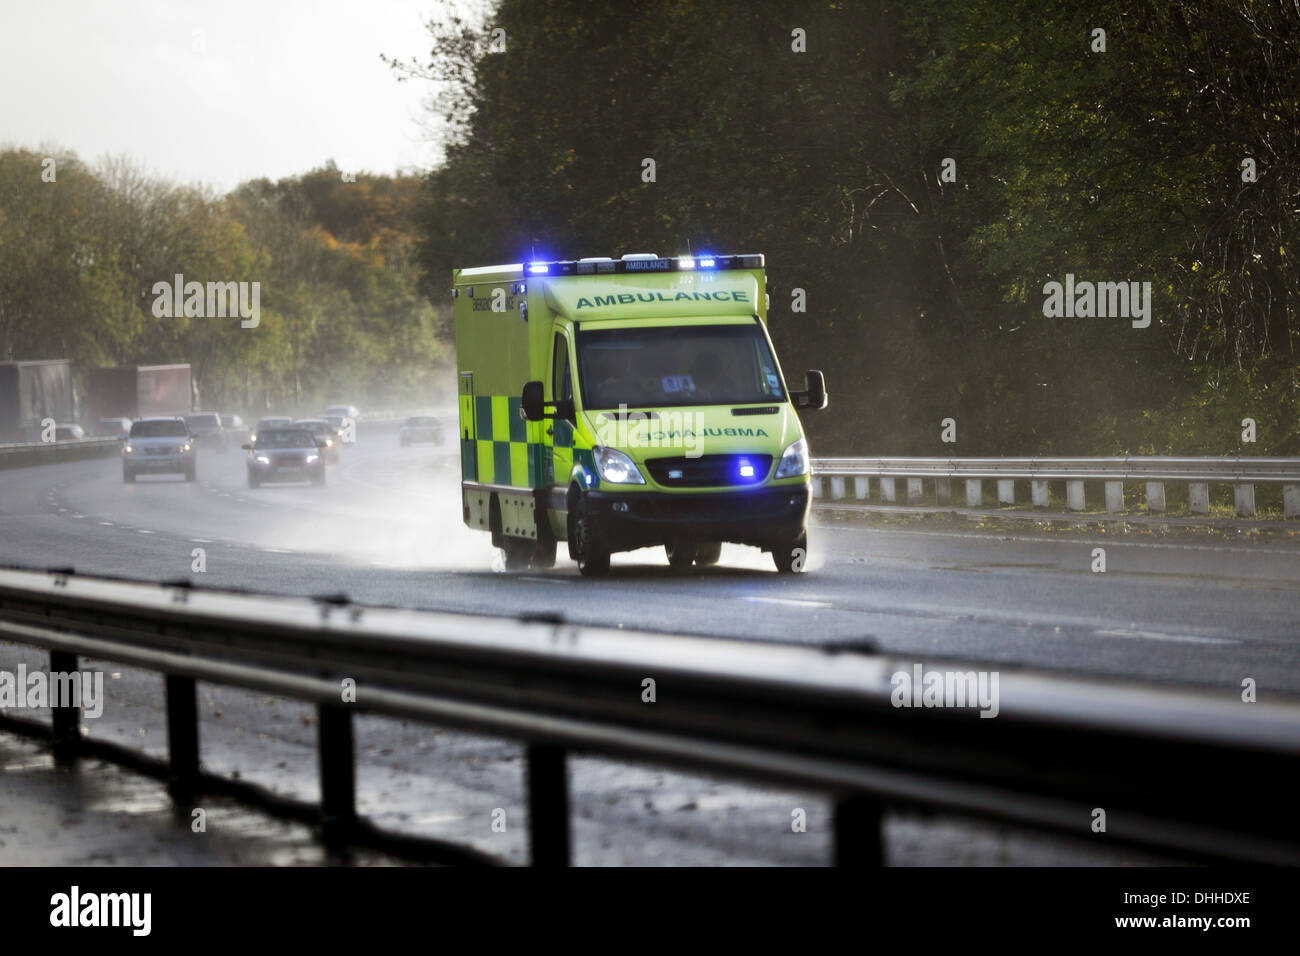 Ambulancia británica en una autopista de Reino Unido Foto de stock